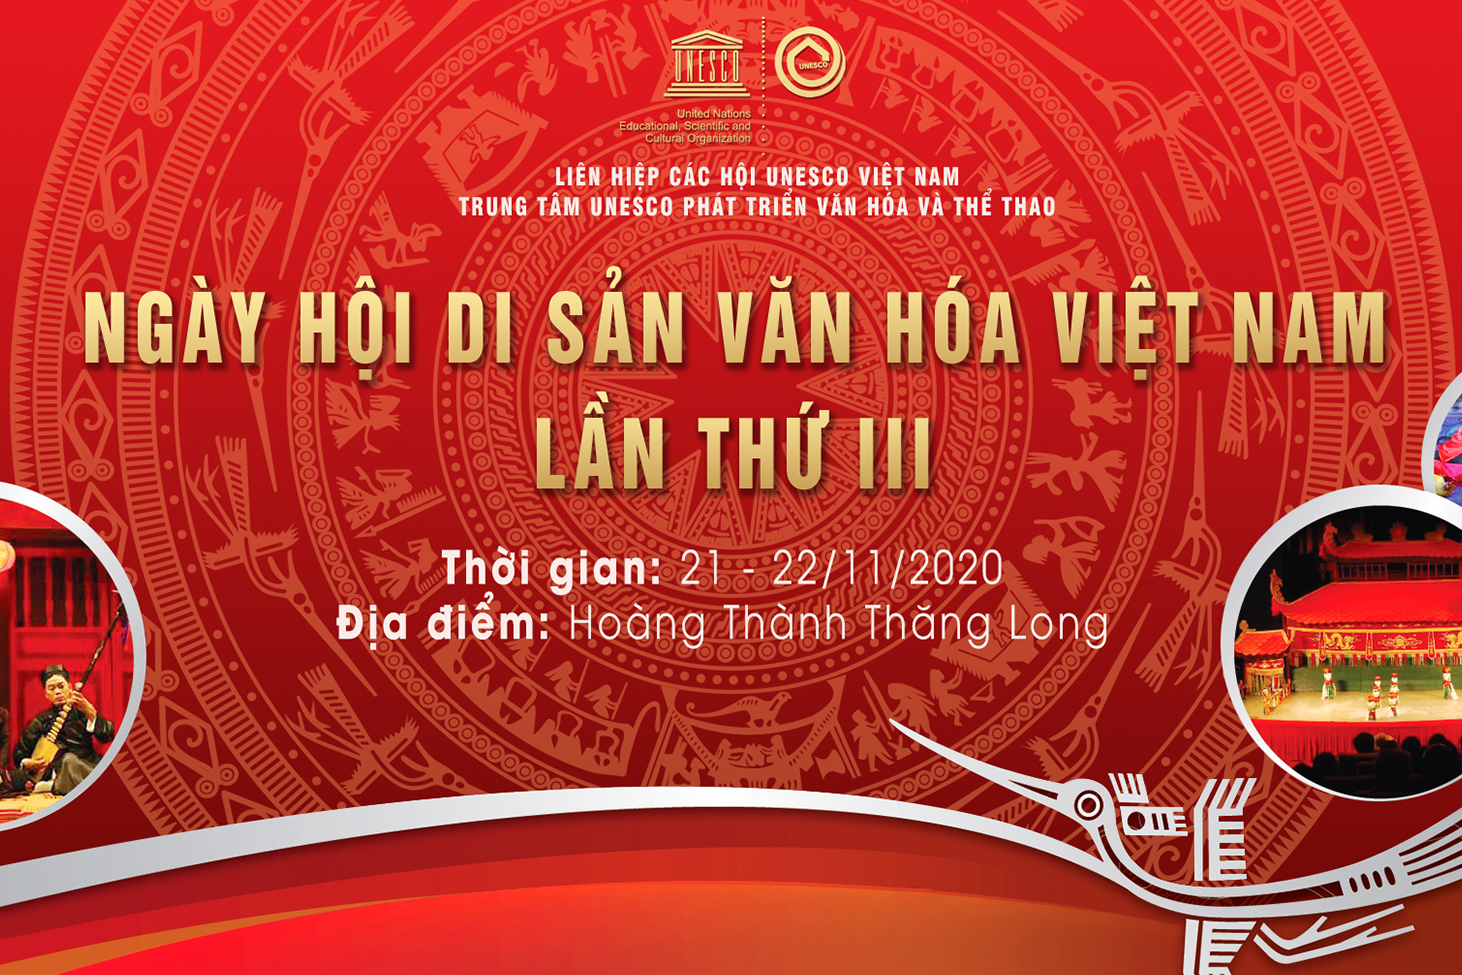  Hình Ảnh Ngày Hội Di Sản văn Hóa Việt Nam Lần III năm 2020